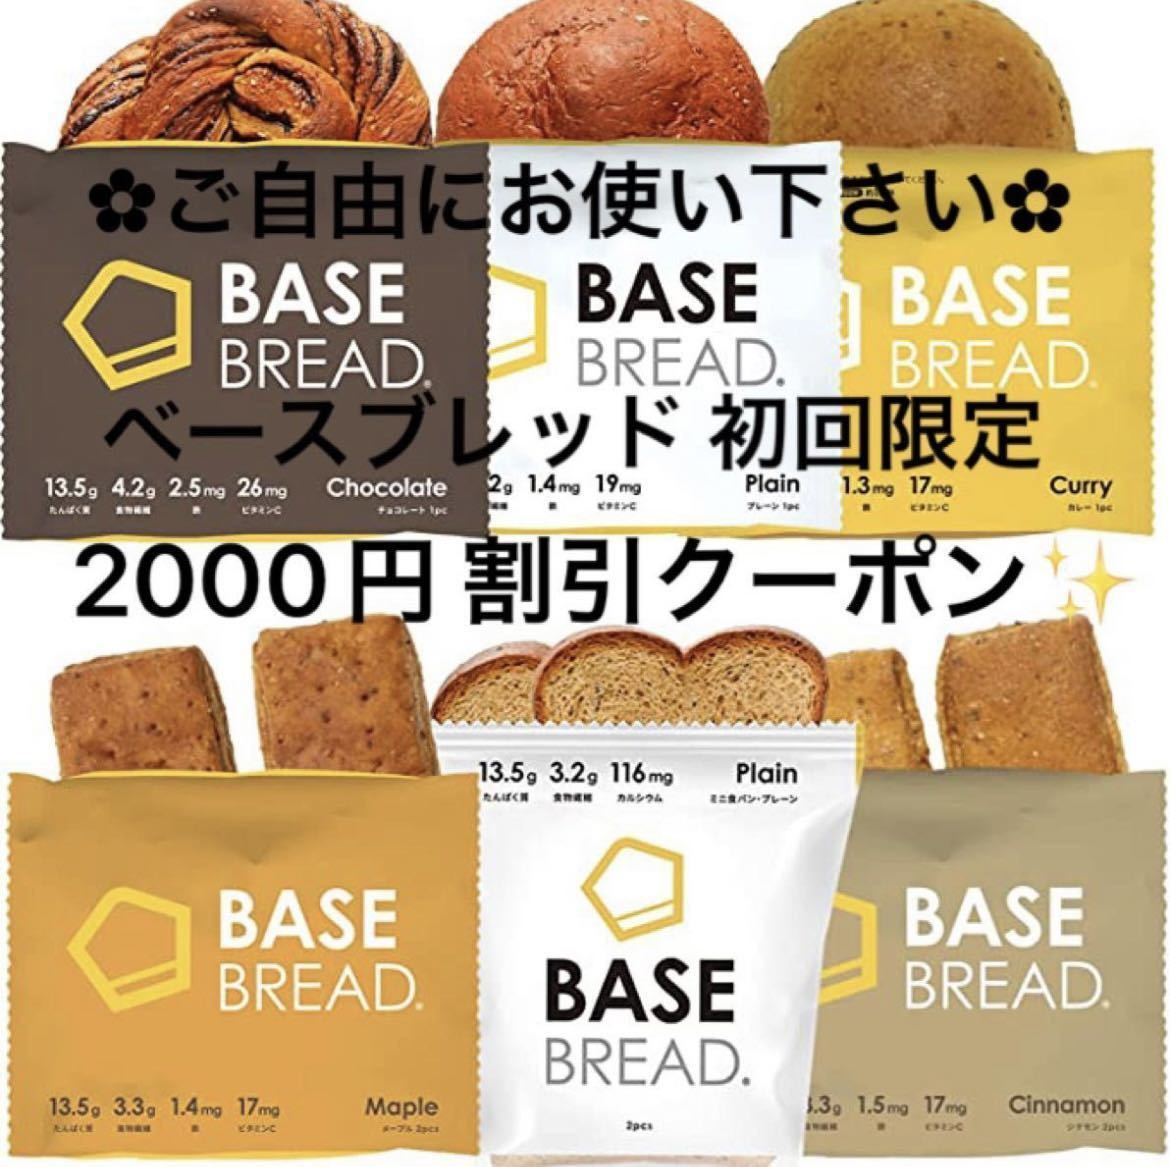 ベースブレッド BASE BREAD 初回限定 2000円 割引クーポン_画像1